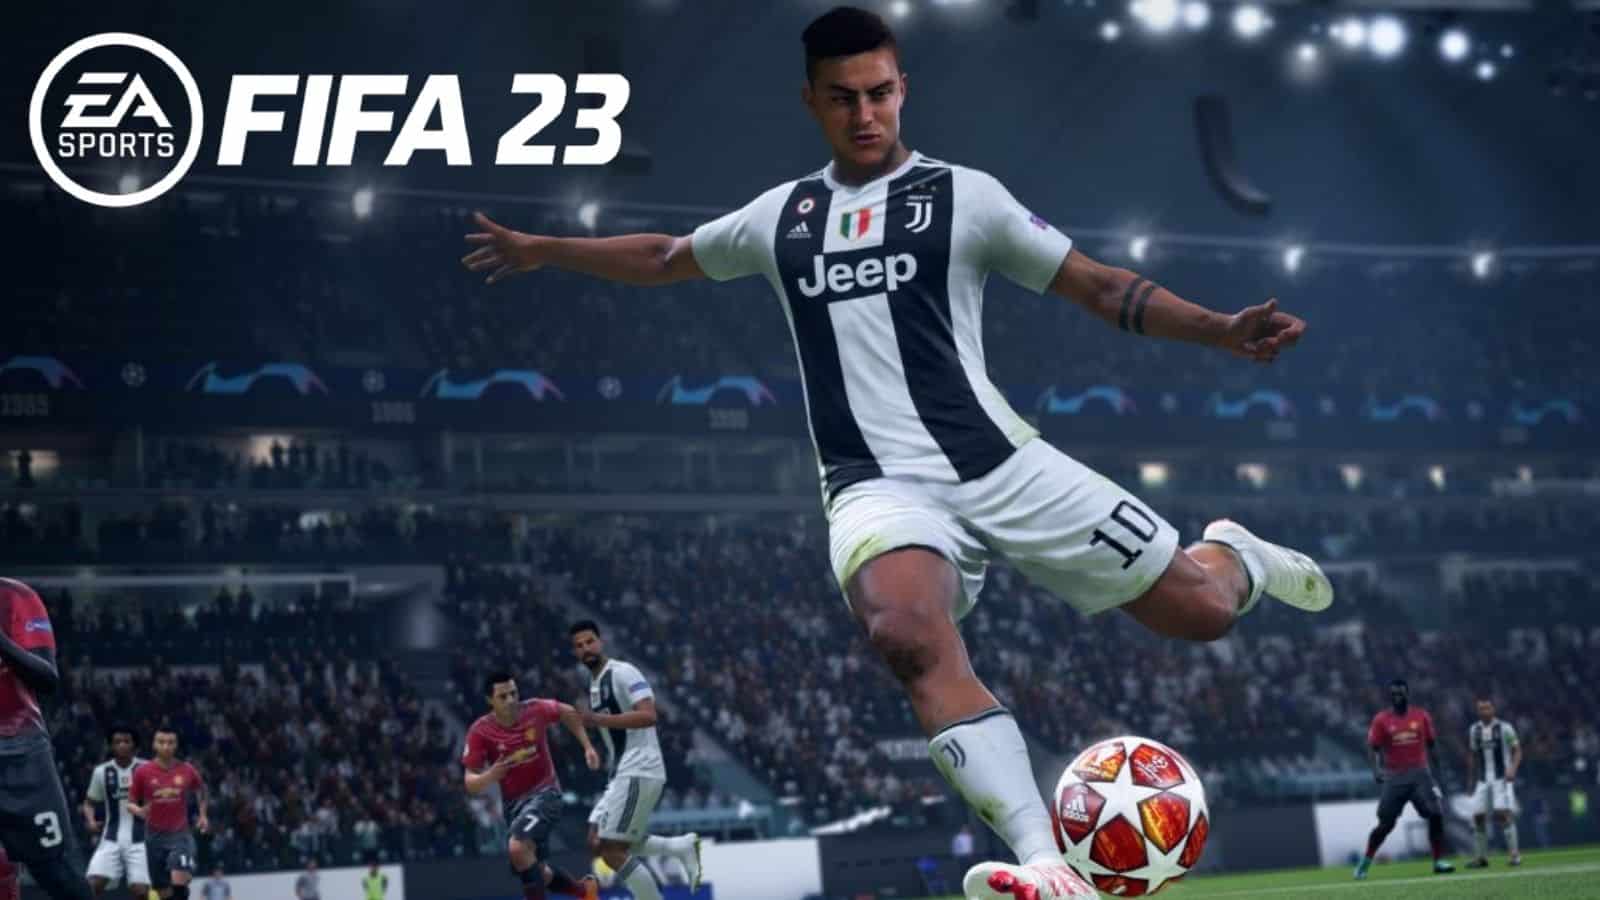 Juventus' Dybala with FIFA 23 logo